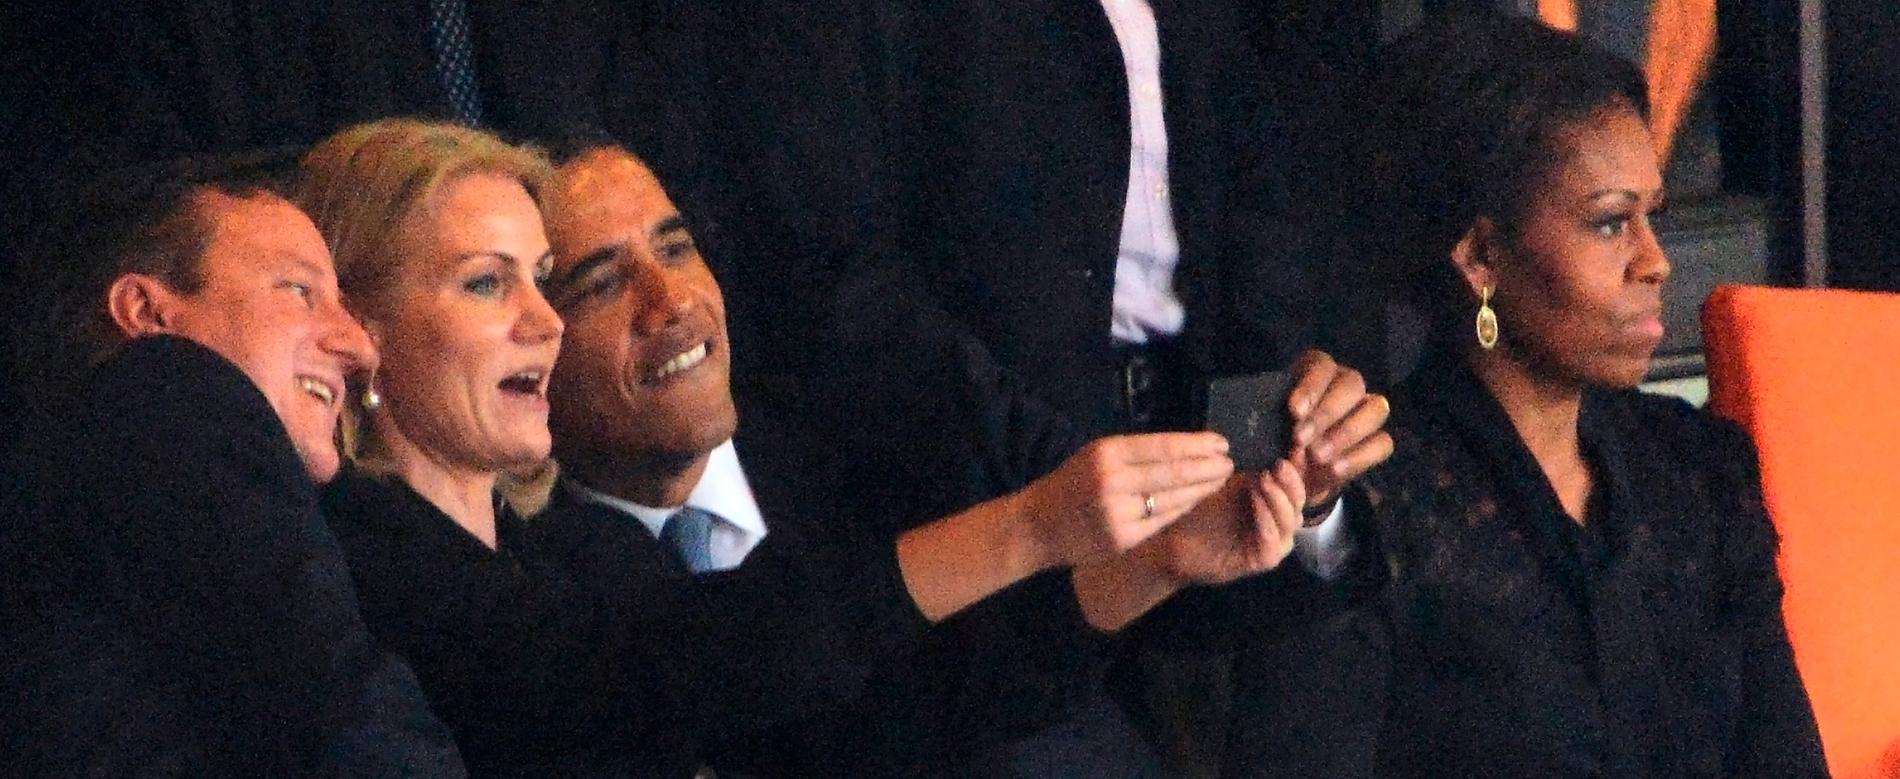 David Cameron, Helle Thorning-Schmidt och Barack Obama tar välkänd selfie.